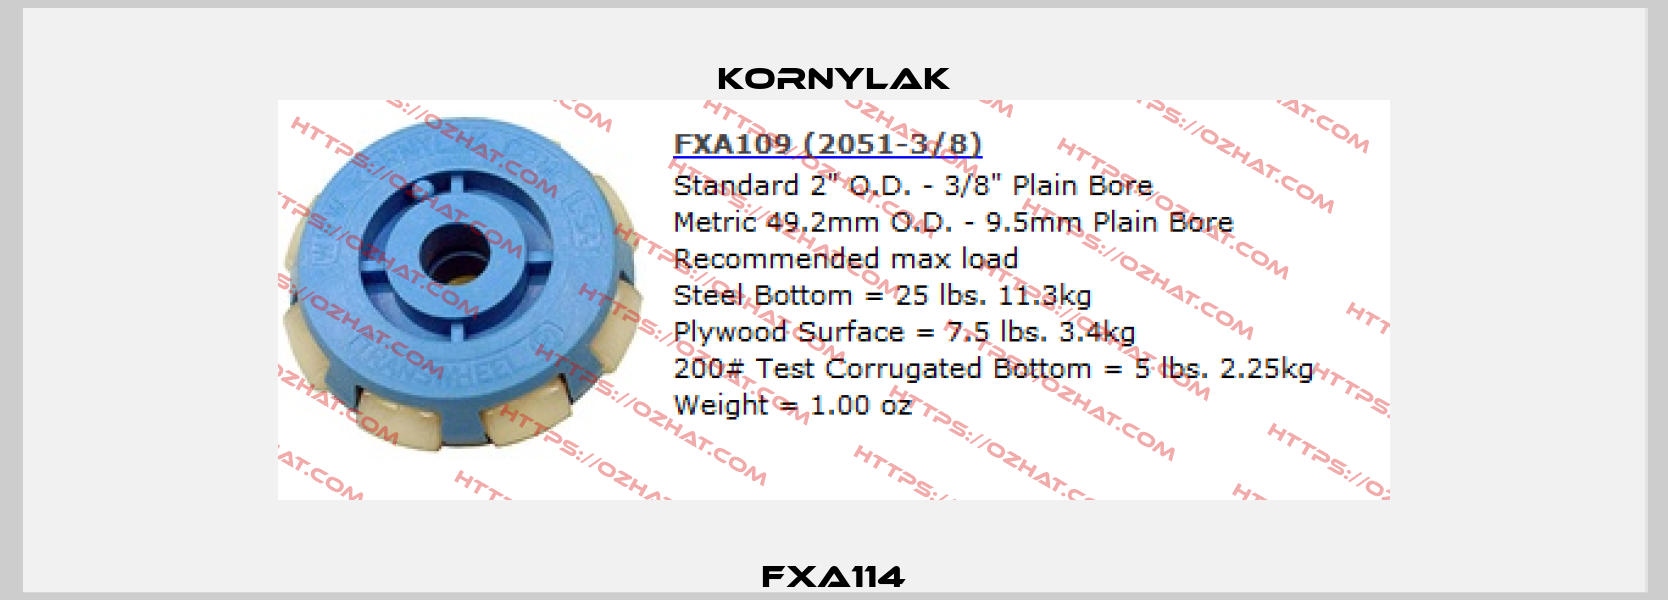 FXA114 Kornylak